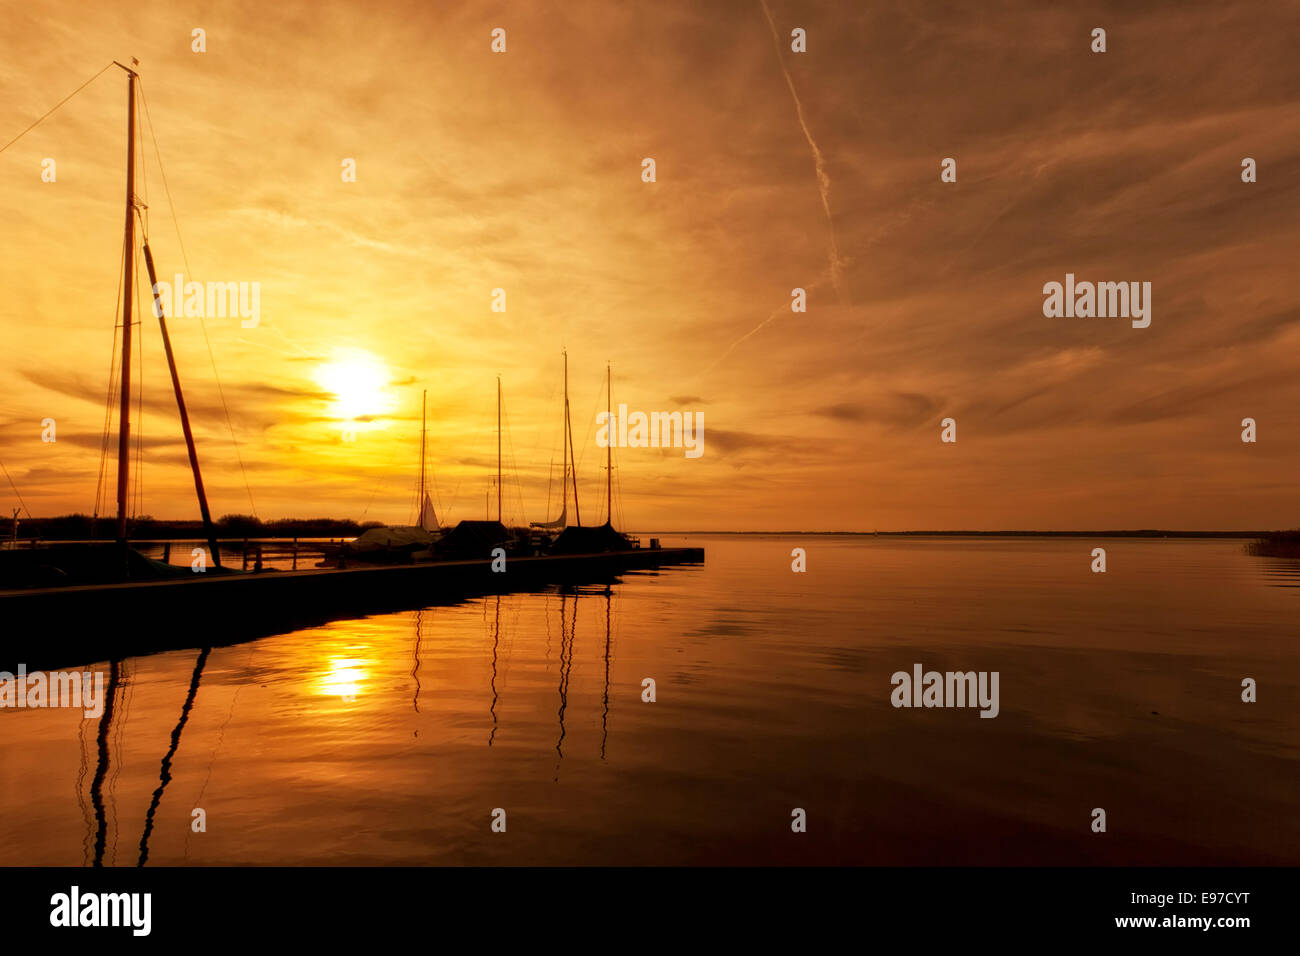 Sunset at Lake Steinhude, marina and moored sail boats Stock Photo